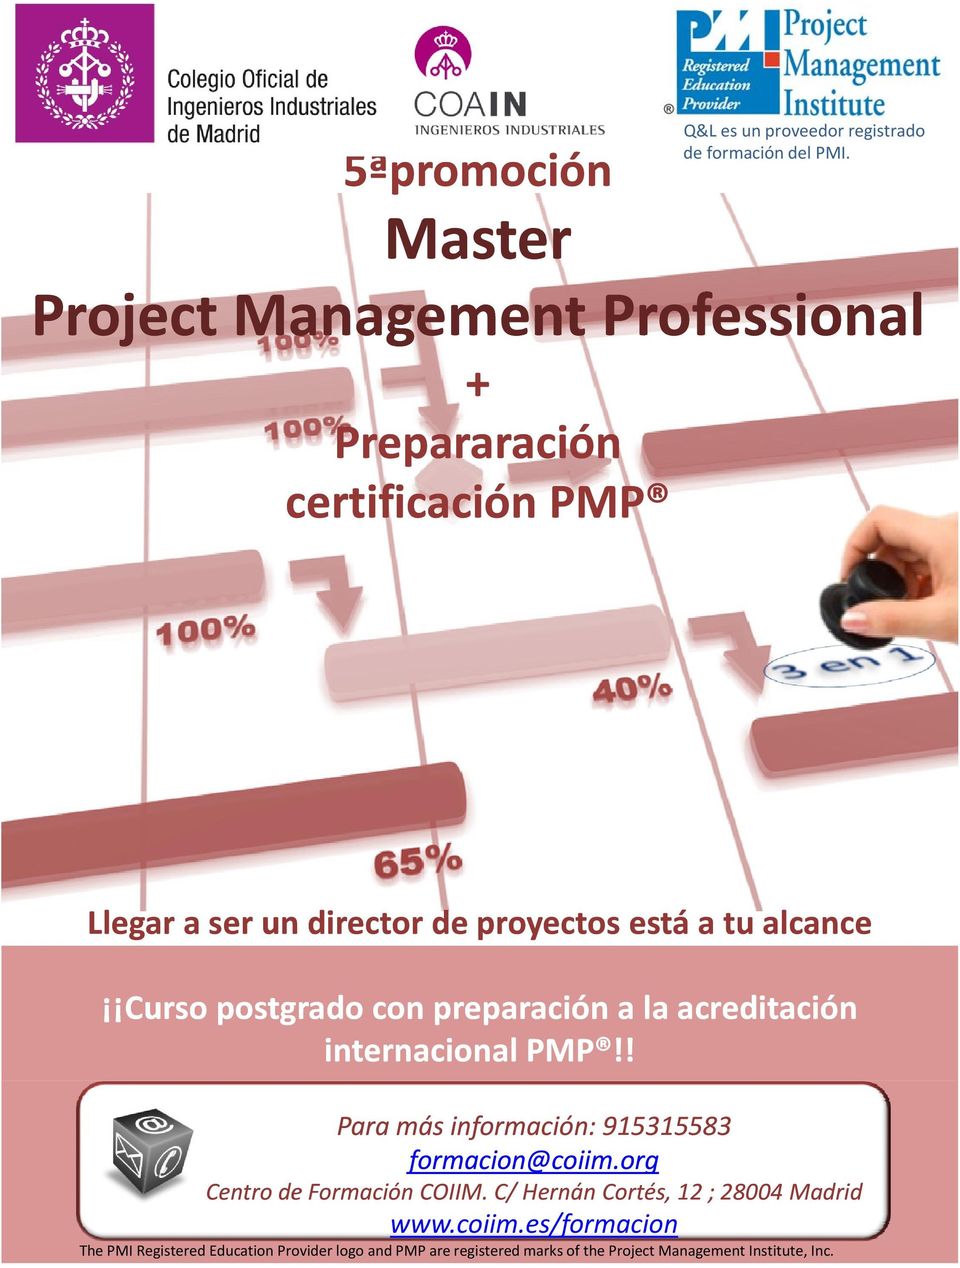 ser un director de proyectos está a tu alcance alcance Curso postgrado con preparación a la acreditación internacional PMP!